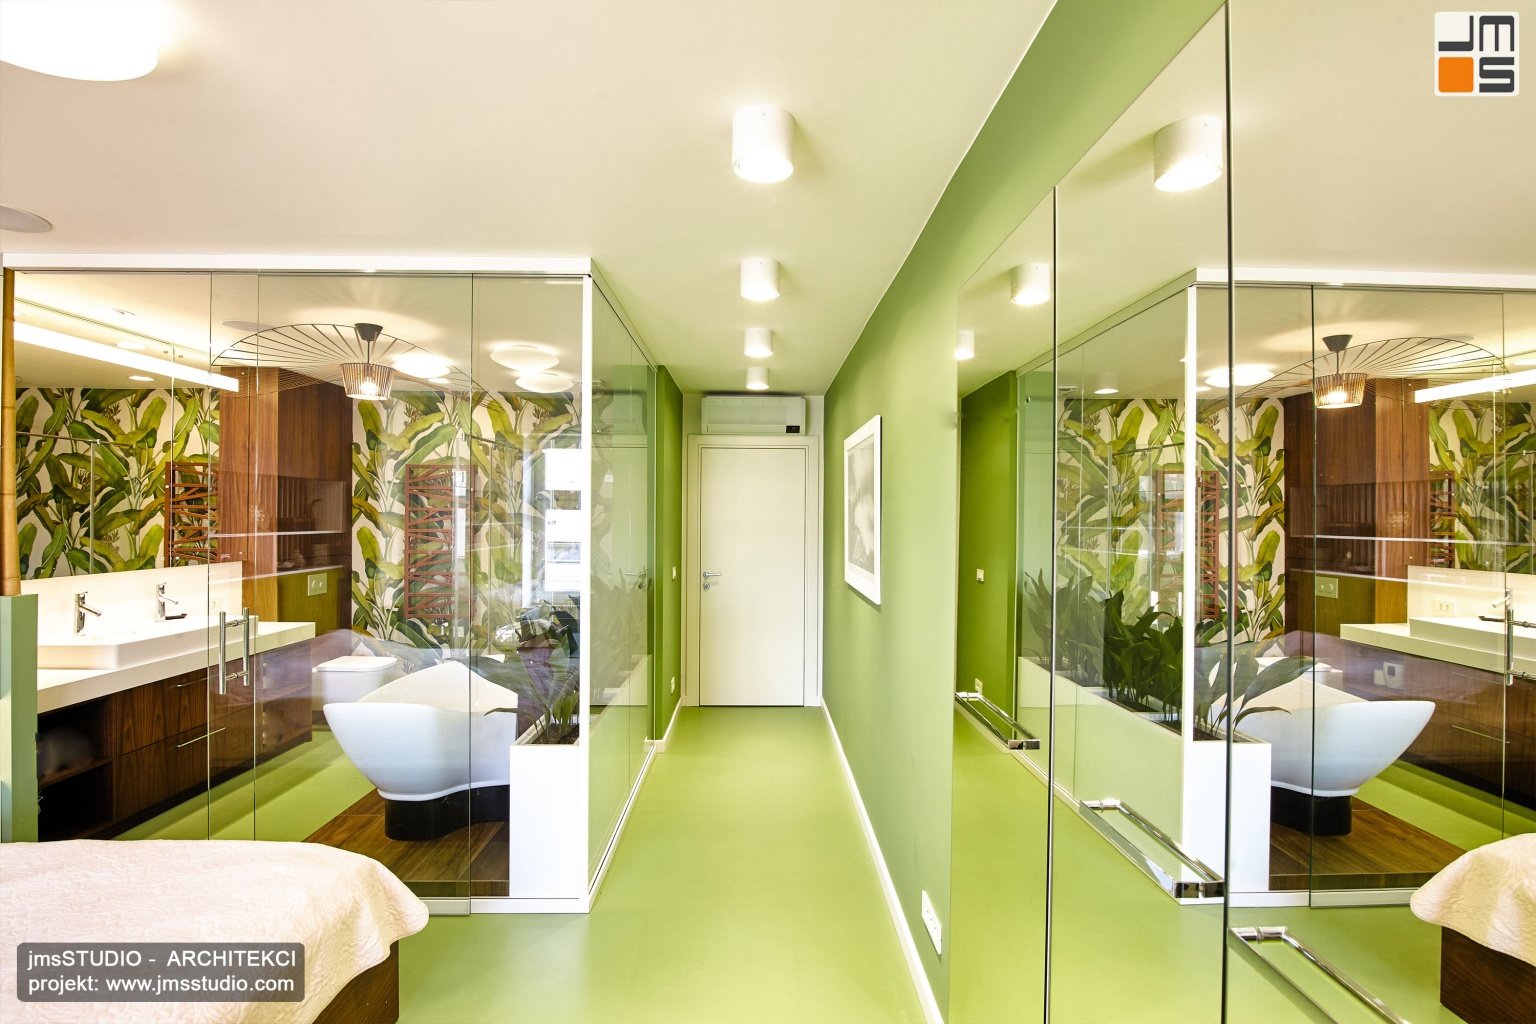 Zielona podłoga z żywicy epoksydowej doskonale koresponduje w projekcie wnętrz z zielenią w salonie kąpielowym połączonym z sypialnią